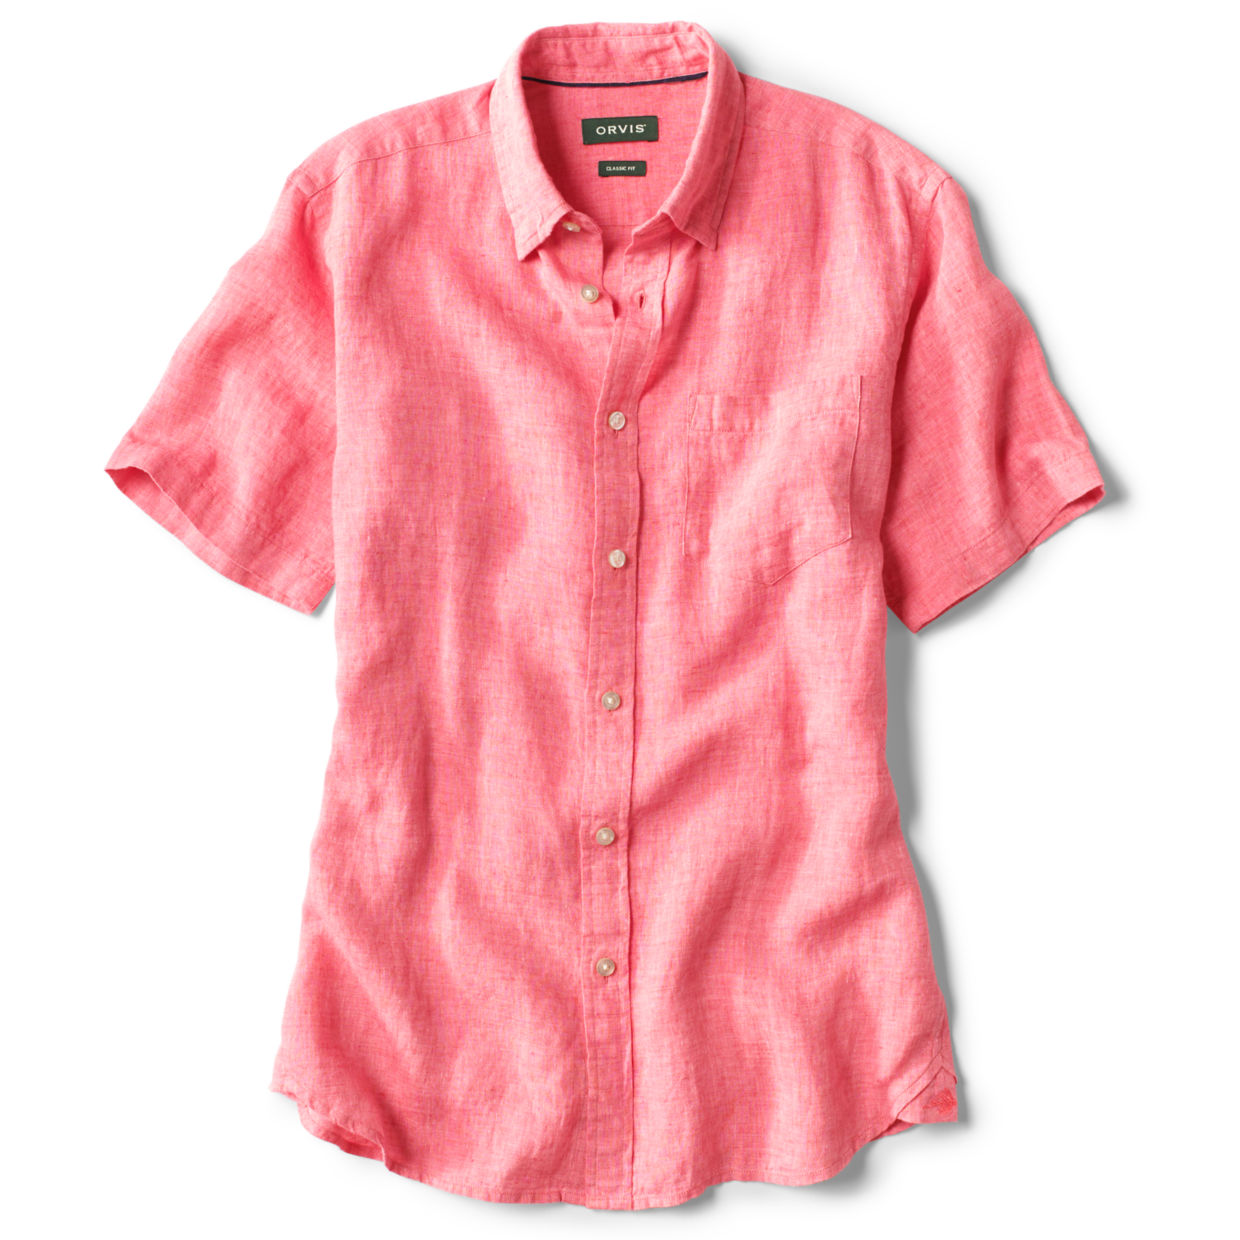 Short-sleeved Pure Linen Shirts / Pure Linen Shirts